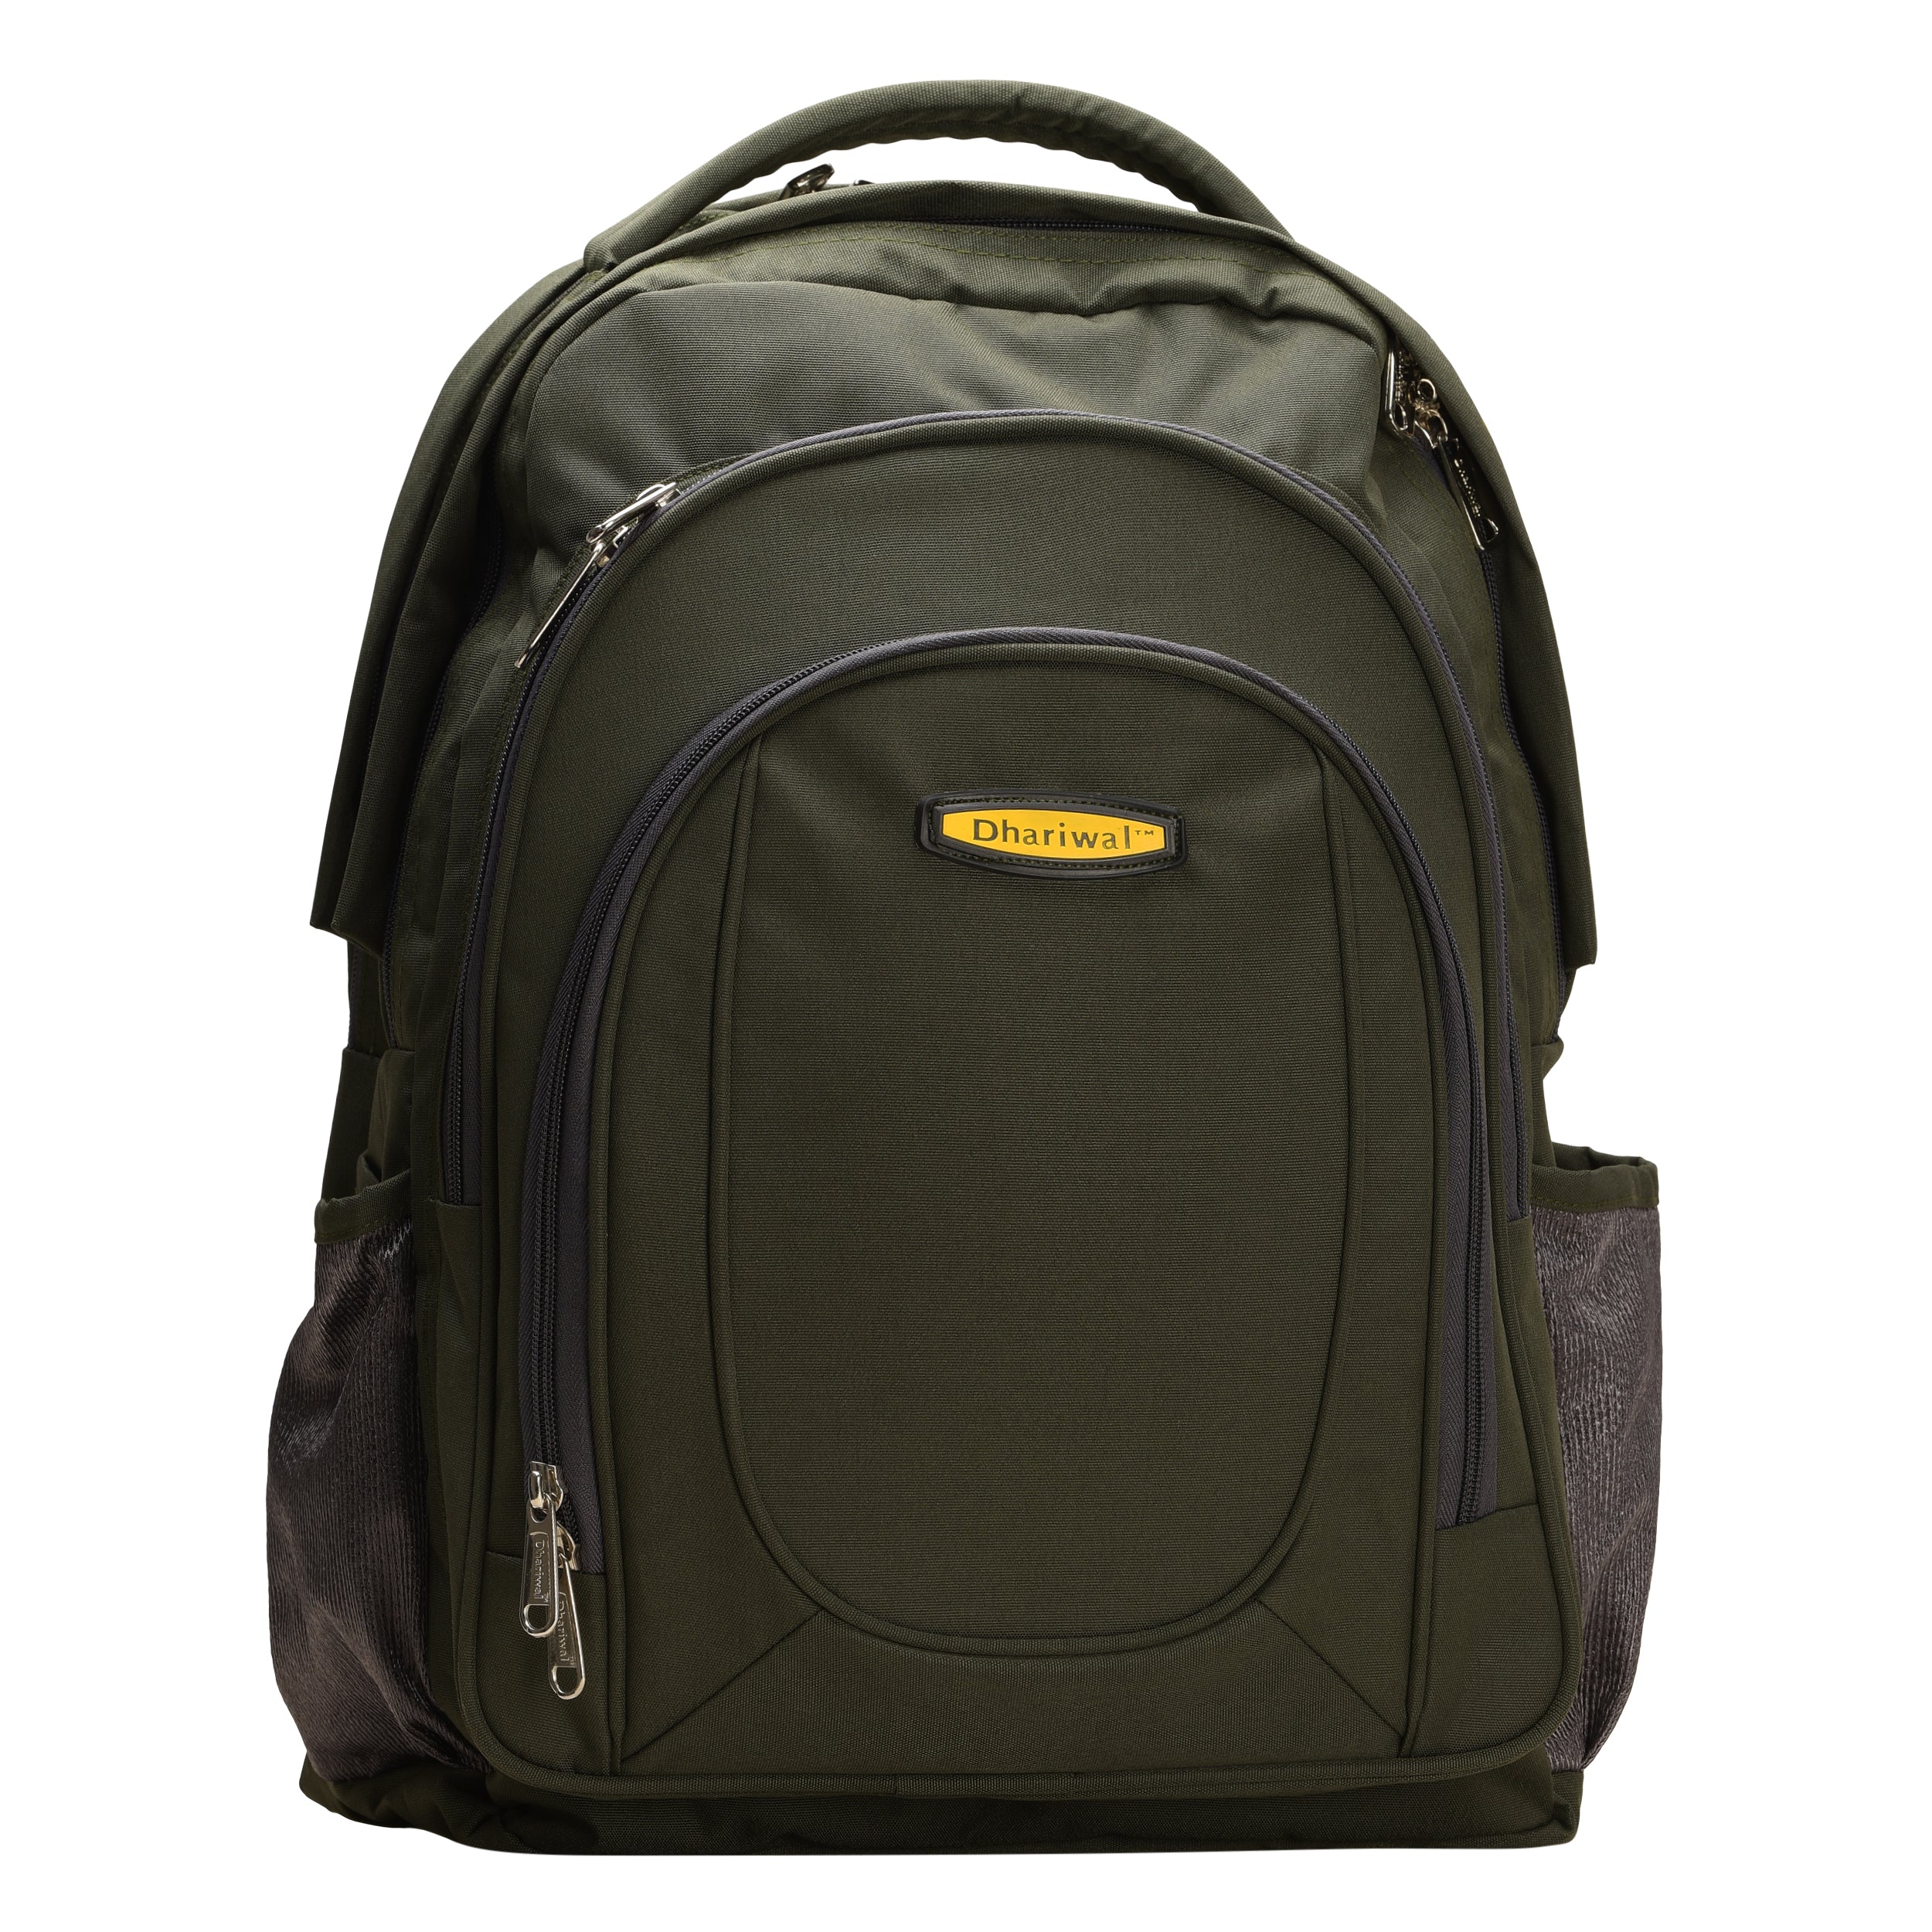 Dhariwal Backpack BP-233 – Dhariwal Bags